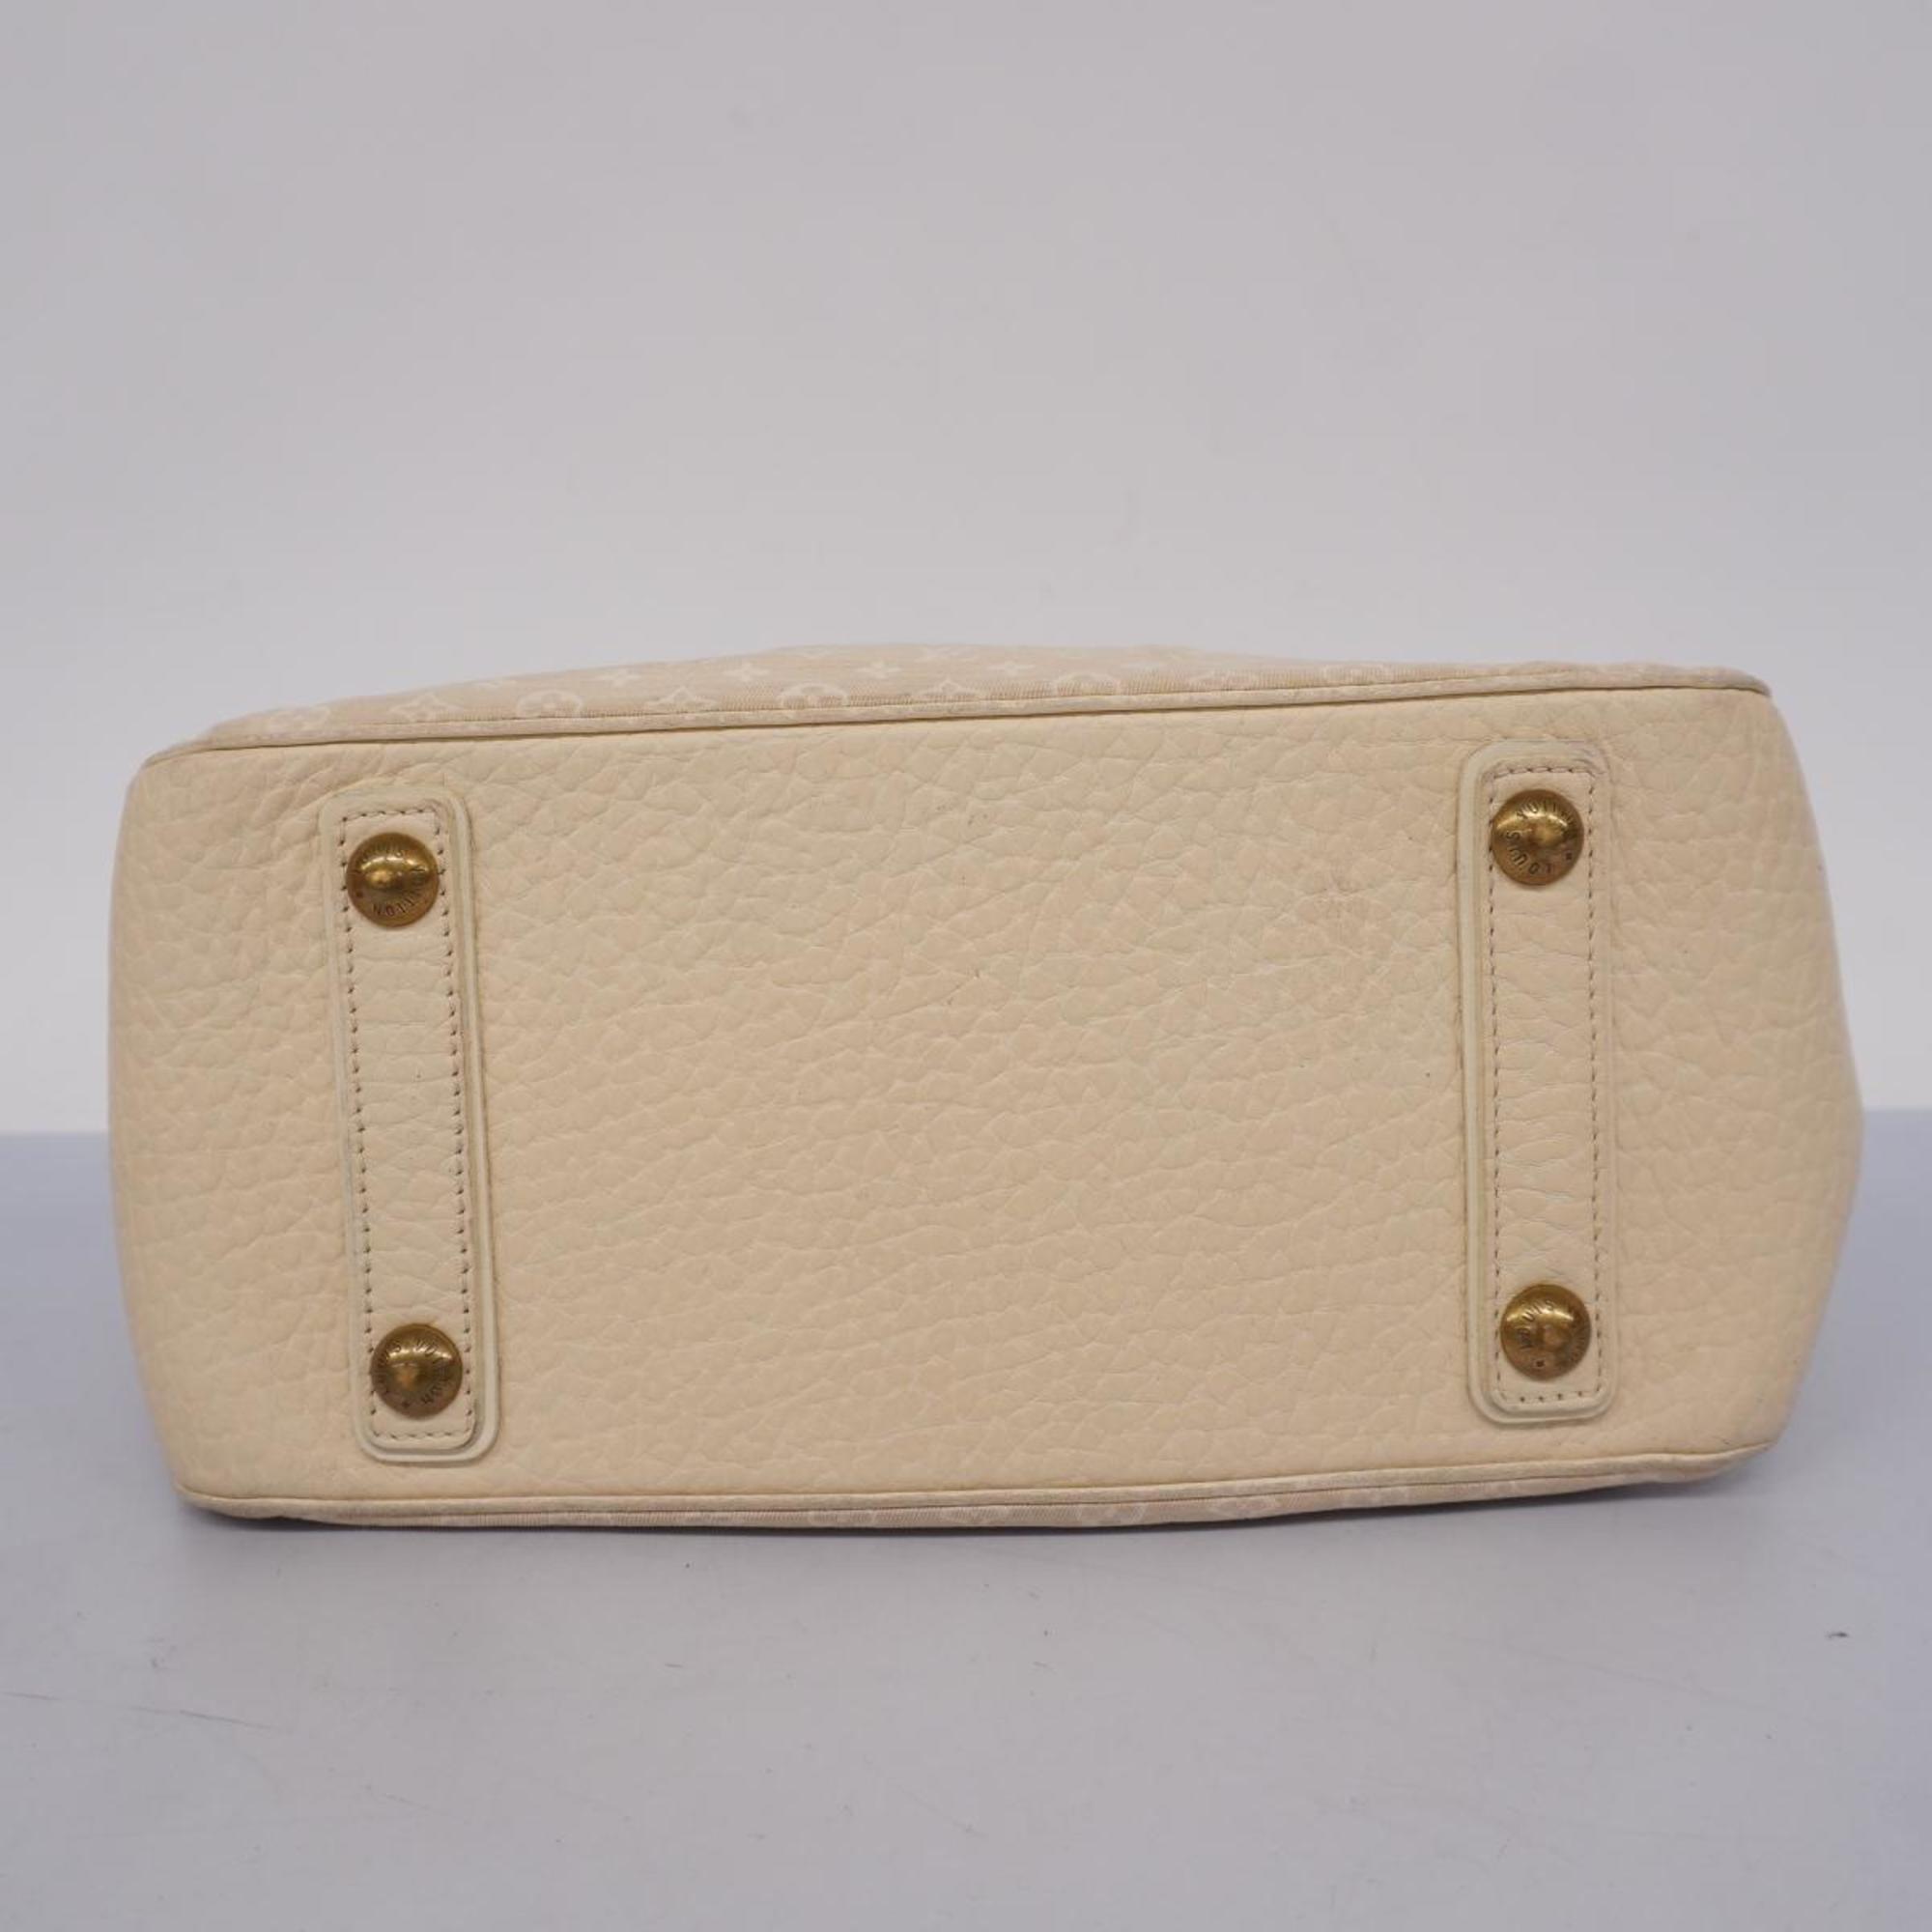 Louis Vuitton Handbag Monogram Lan Trapeze PM M40061 Dune Ladies